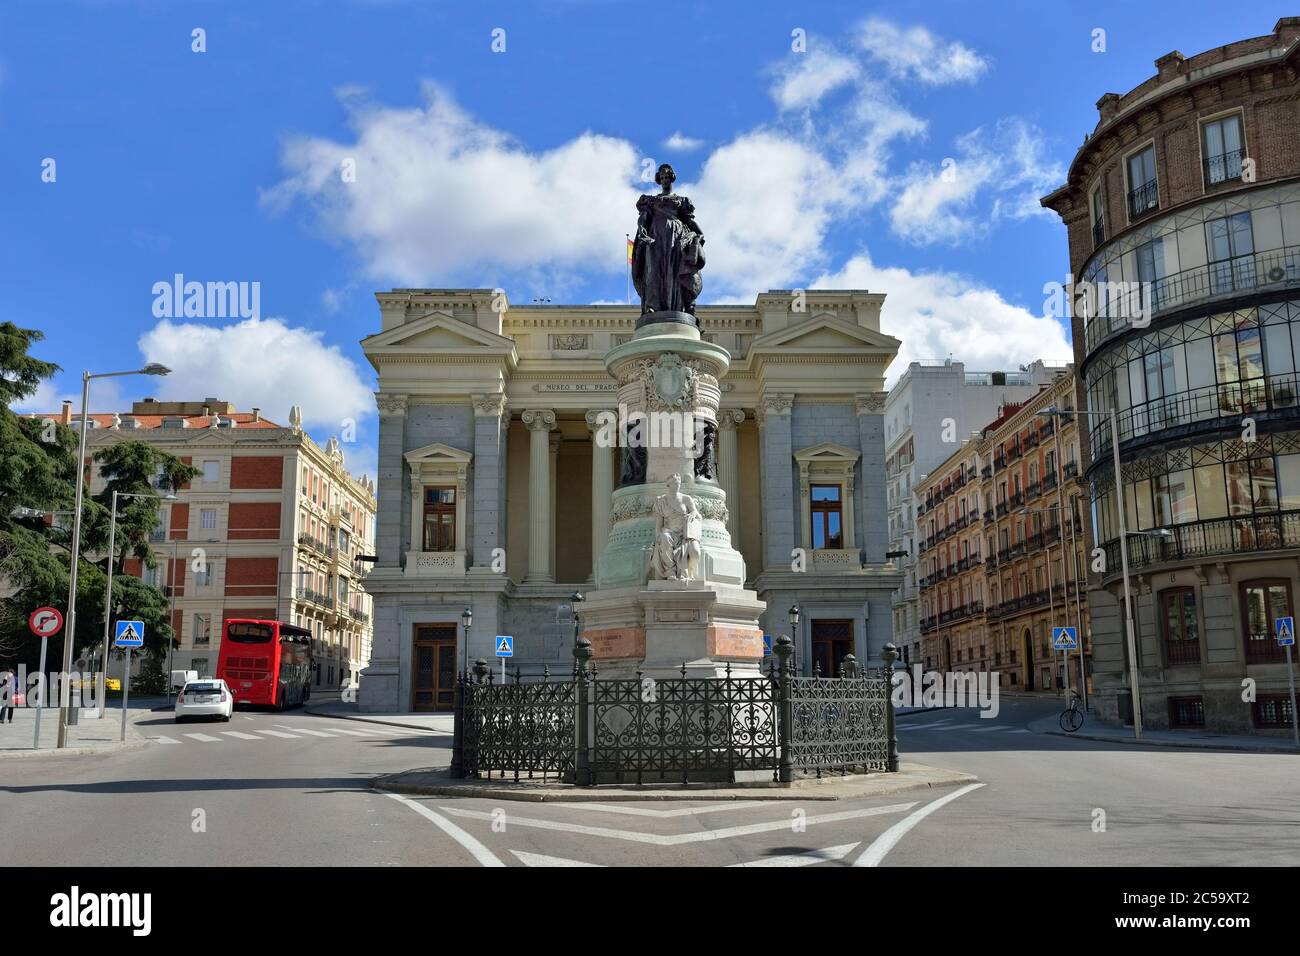 MADRID - 3 MARS 2014 : le musée du Prado de Madrid présente l'une des plus belles collections d'art européen au monde avec plus de 21,000 pièces. L'avant du Banque D'Images